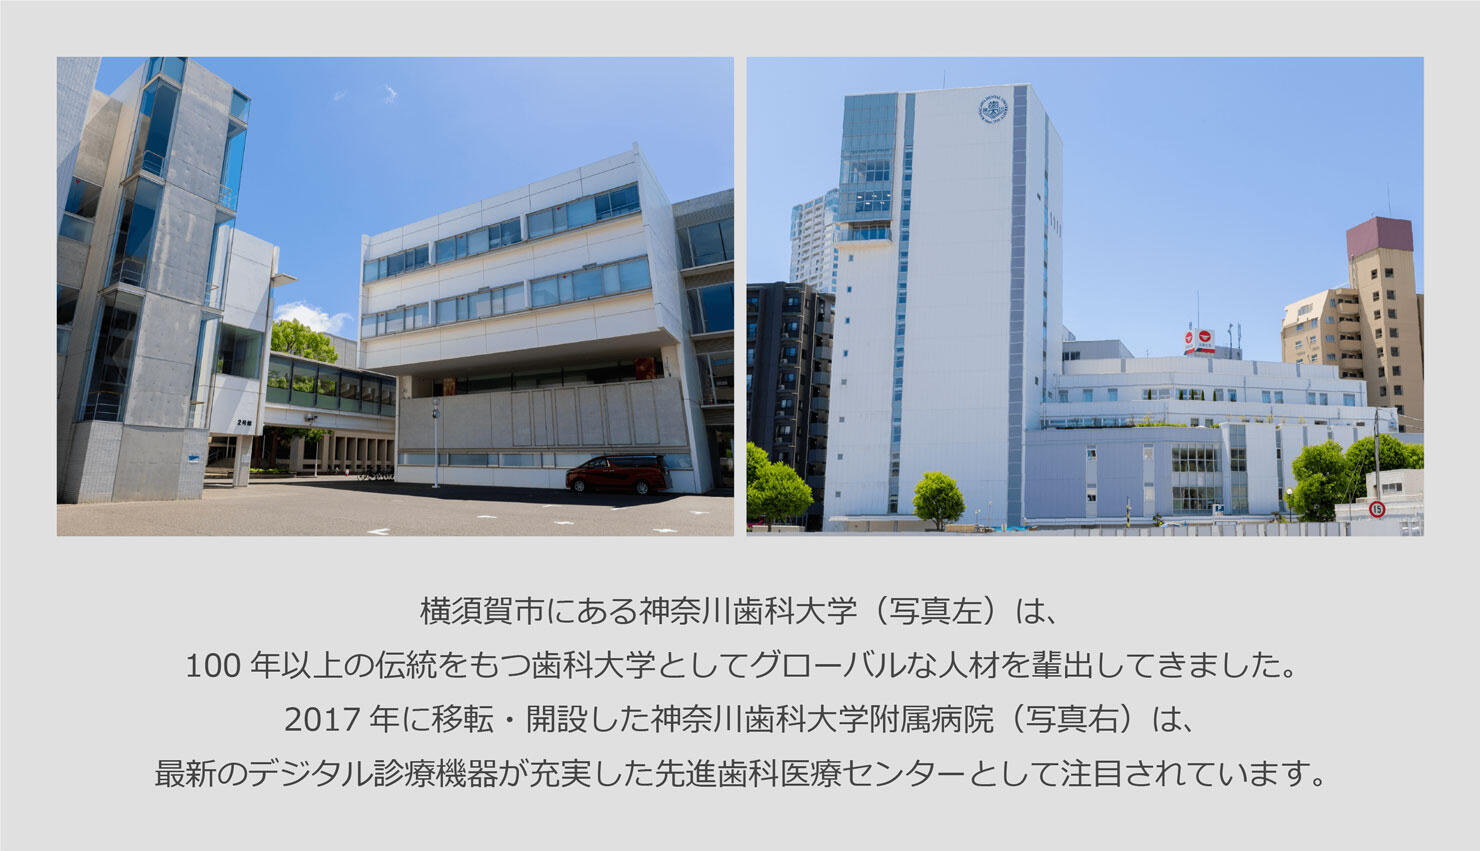 横須賀市にある神奈川歯科大学（写真左）は、100年以上の伝統をもつ歯科大学としてグローバルな人材を輩出してきました。2017年に移転・開設した神奈川歯科大学附属病院（写真右）は、最新のデジタル診療機器が充実した先進歯科医療センターとして注目されています。